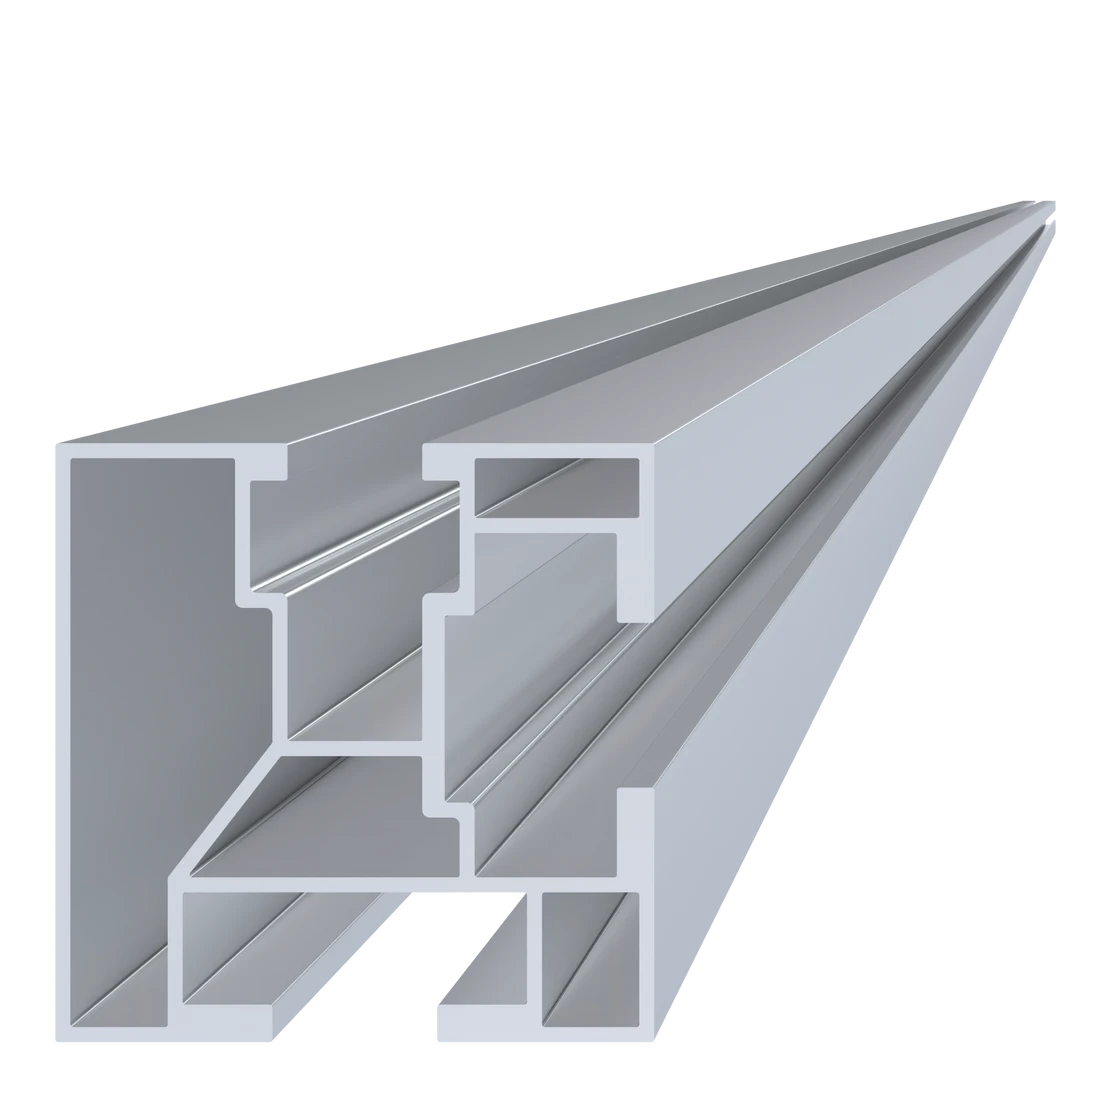 Hliníkový profil pro konstrukci solárních panelů, rozměr 40x40mm, materiál EN AW 6063 T6, přírodní hliník bez povrchové úpravy